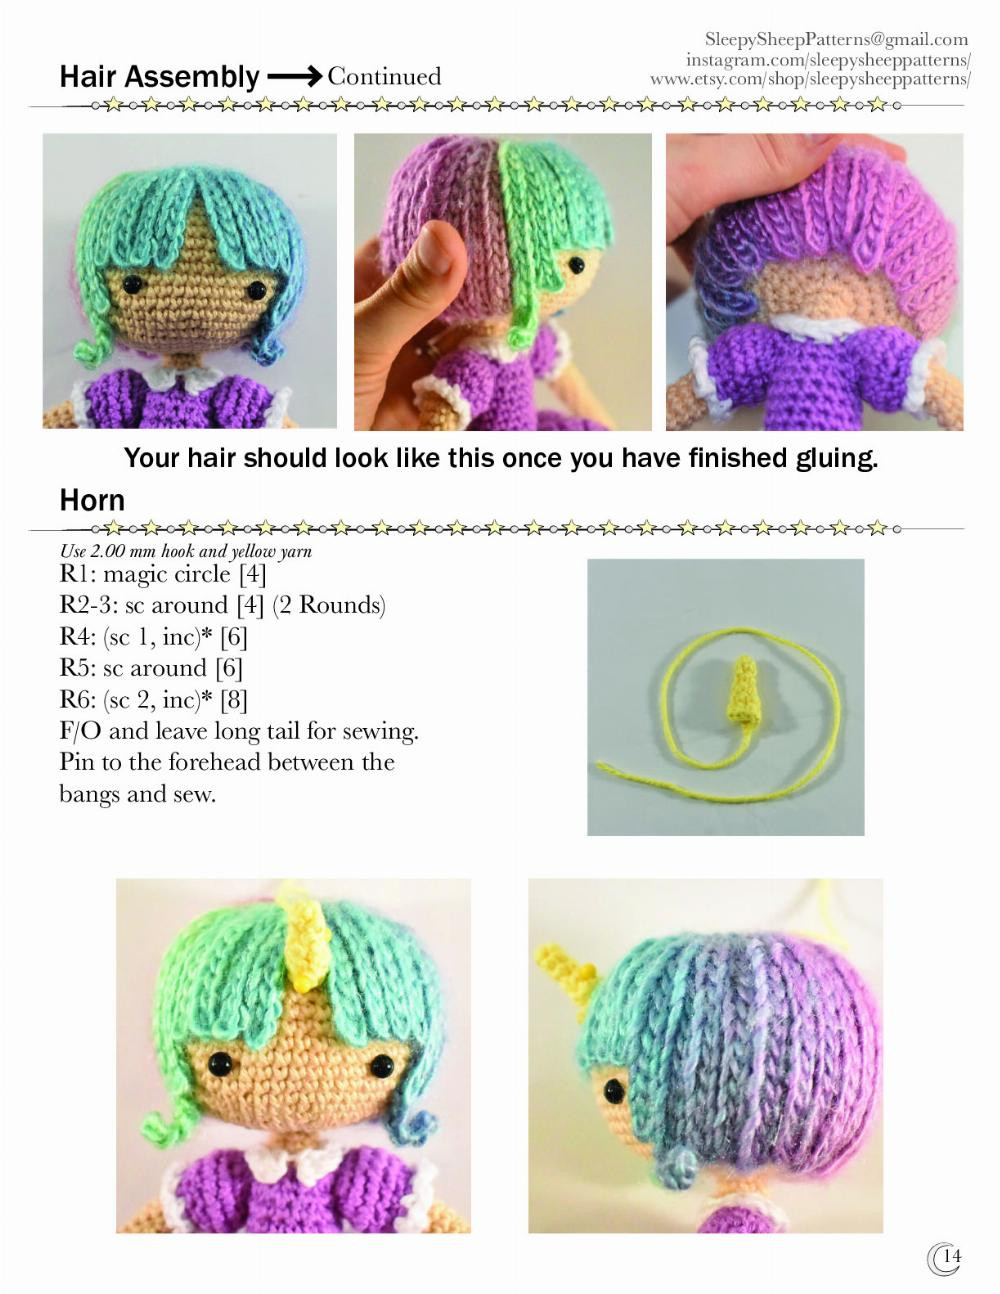 Zoe the Unicorn Girl crochet pattern